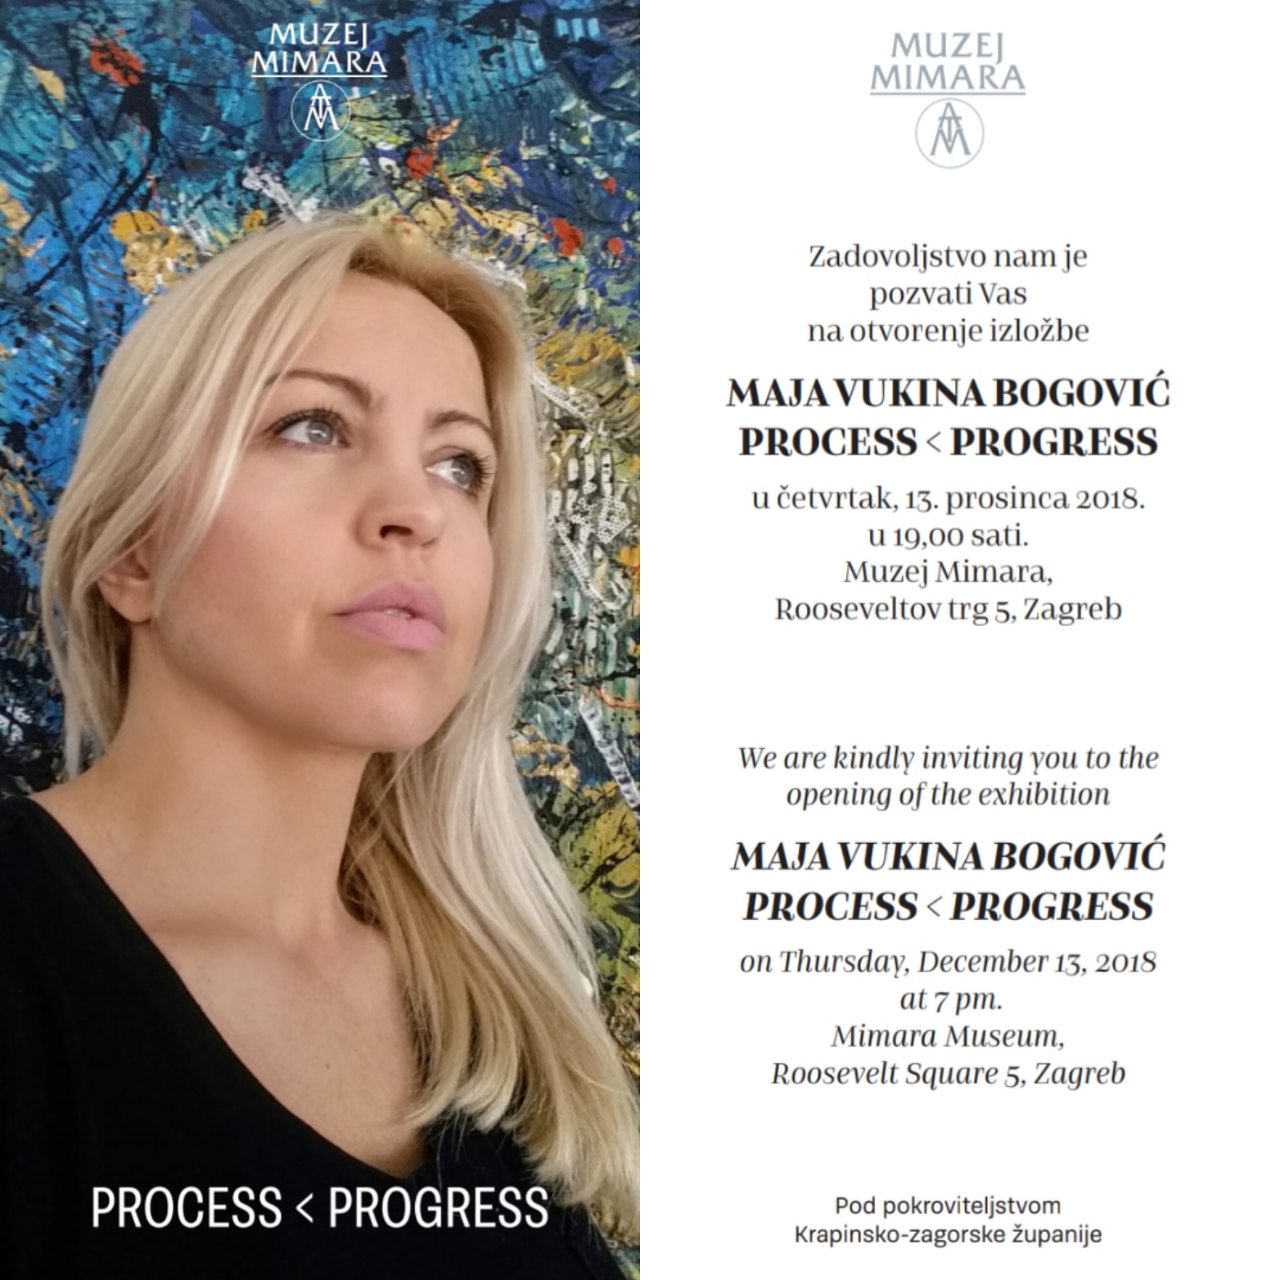 Najava izložbe: PROCESS < PROGRESS - Maja Vukina Bogović